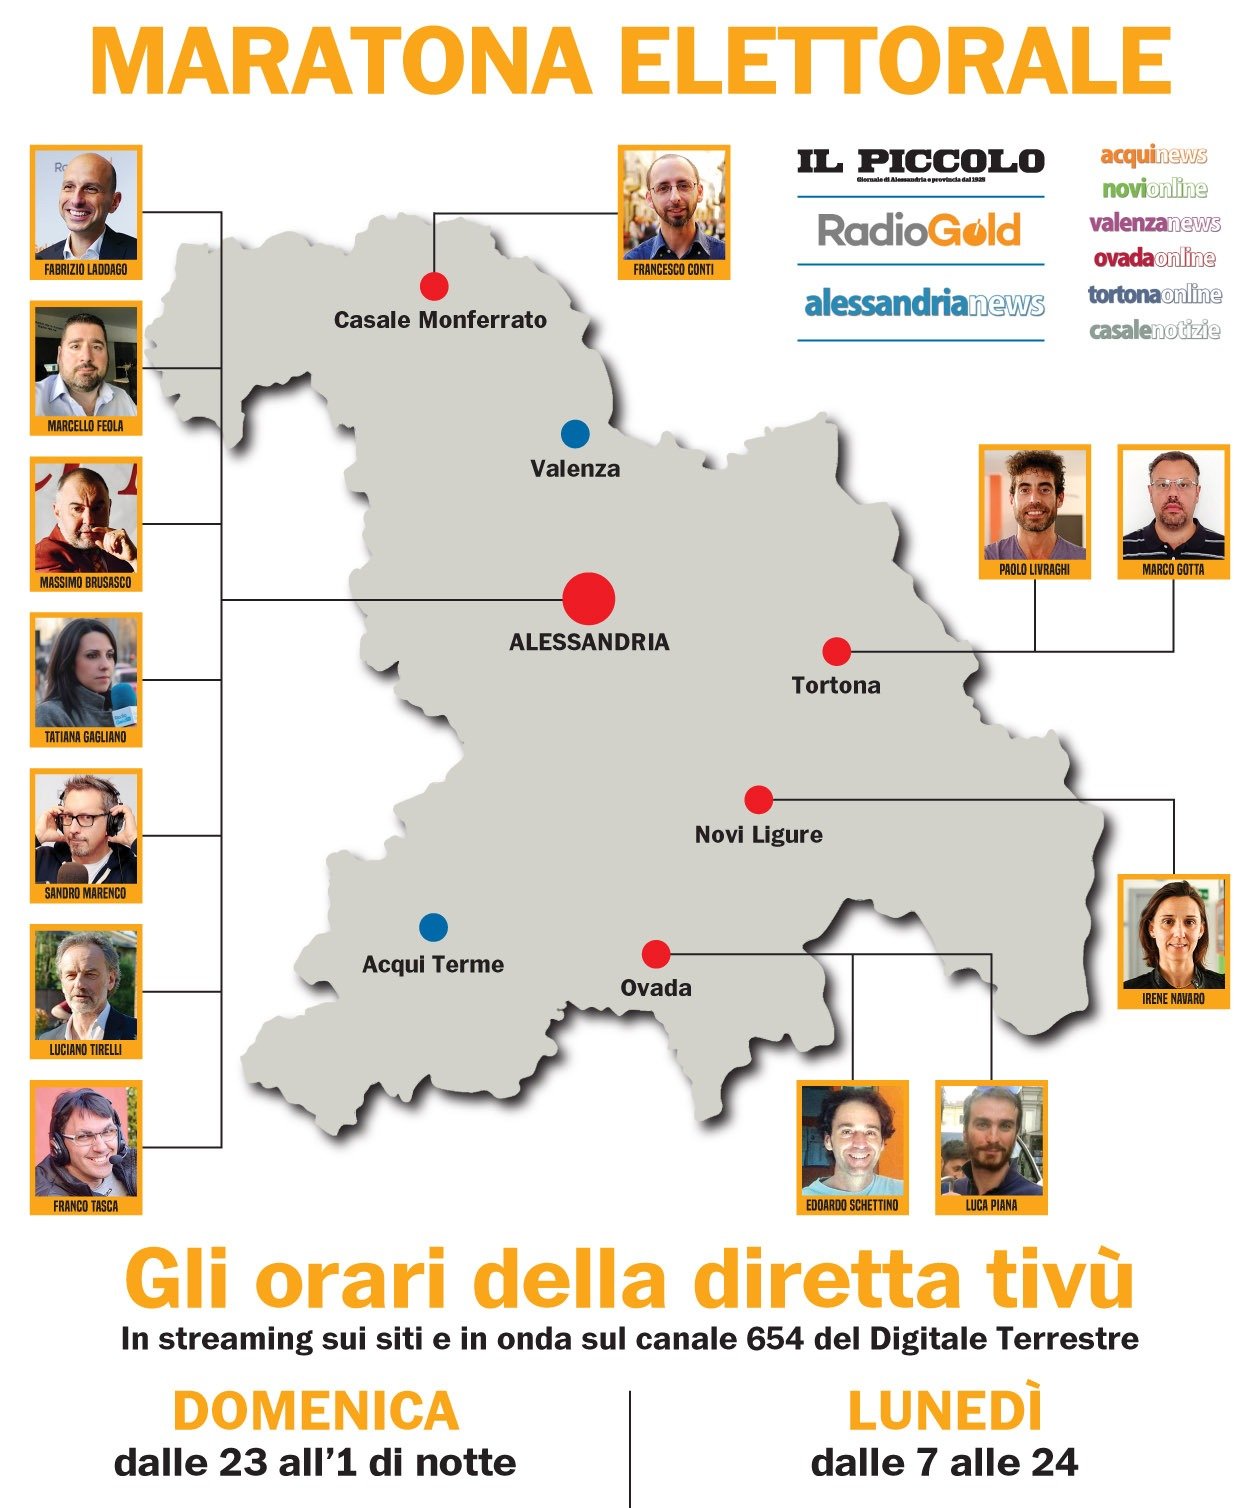 Election day: la lunga diretta con decine di ospiti e 4 inviati a Casale, Tortona, Ovada e Novi